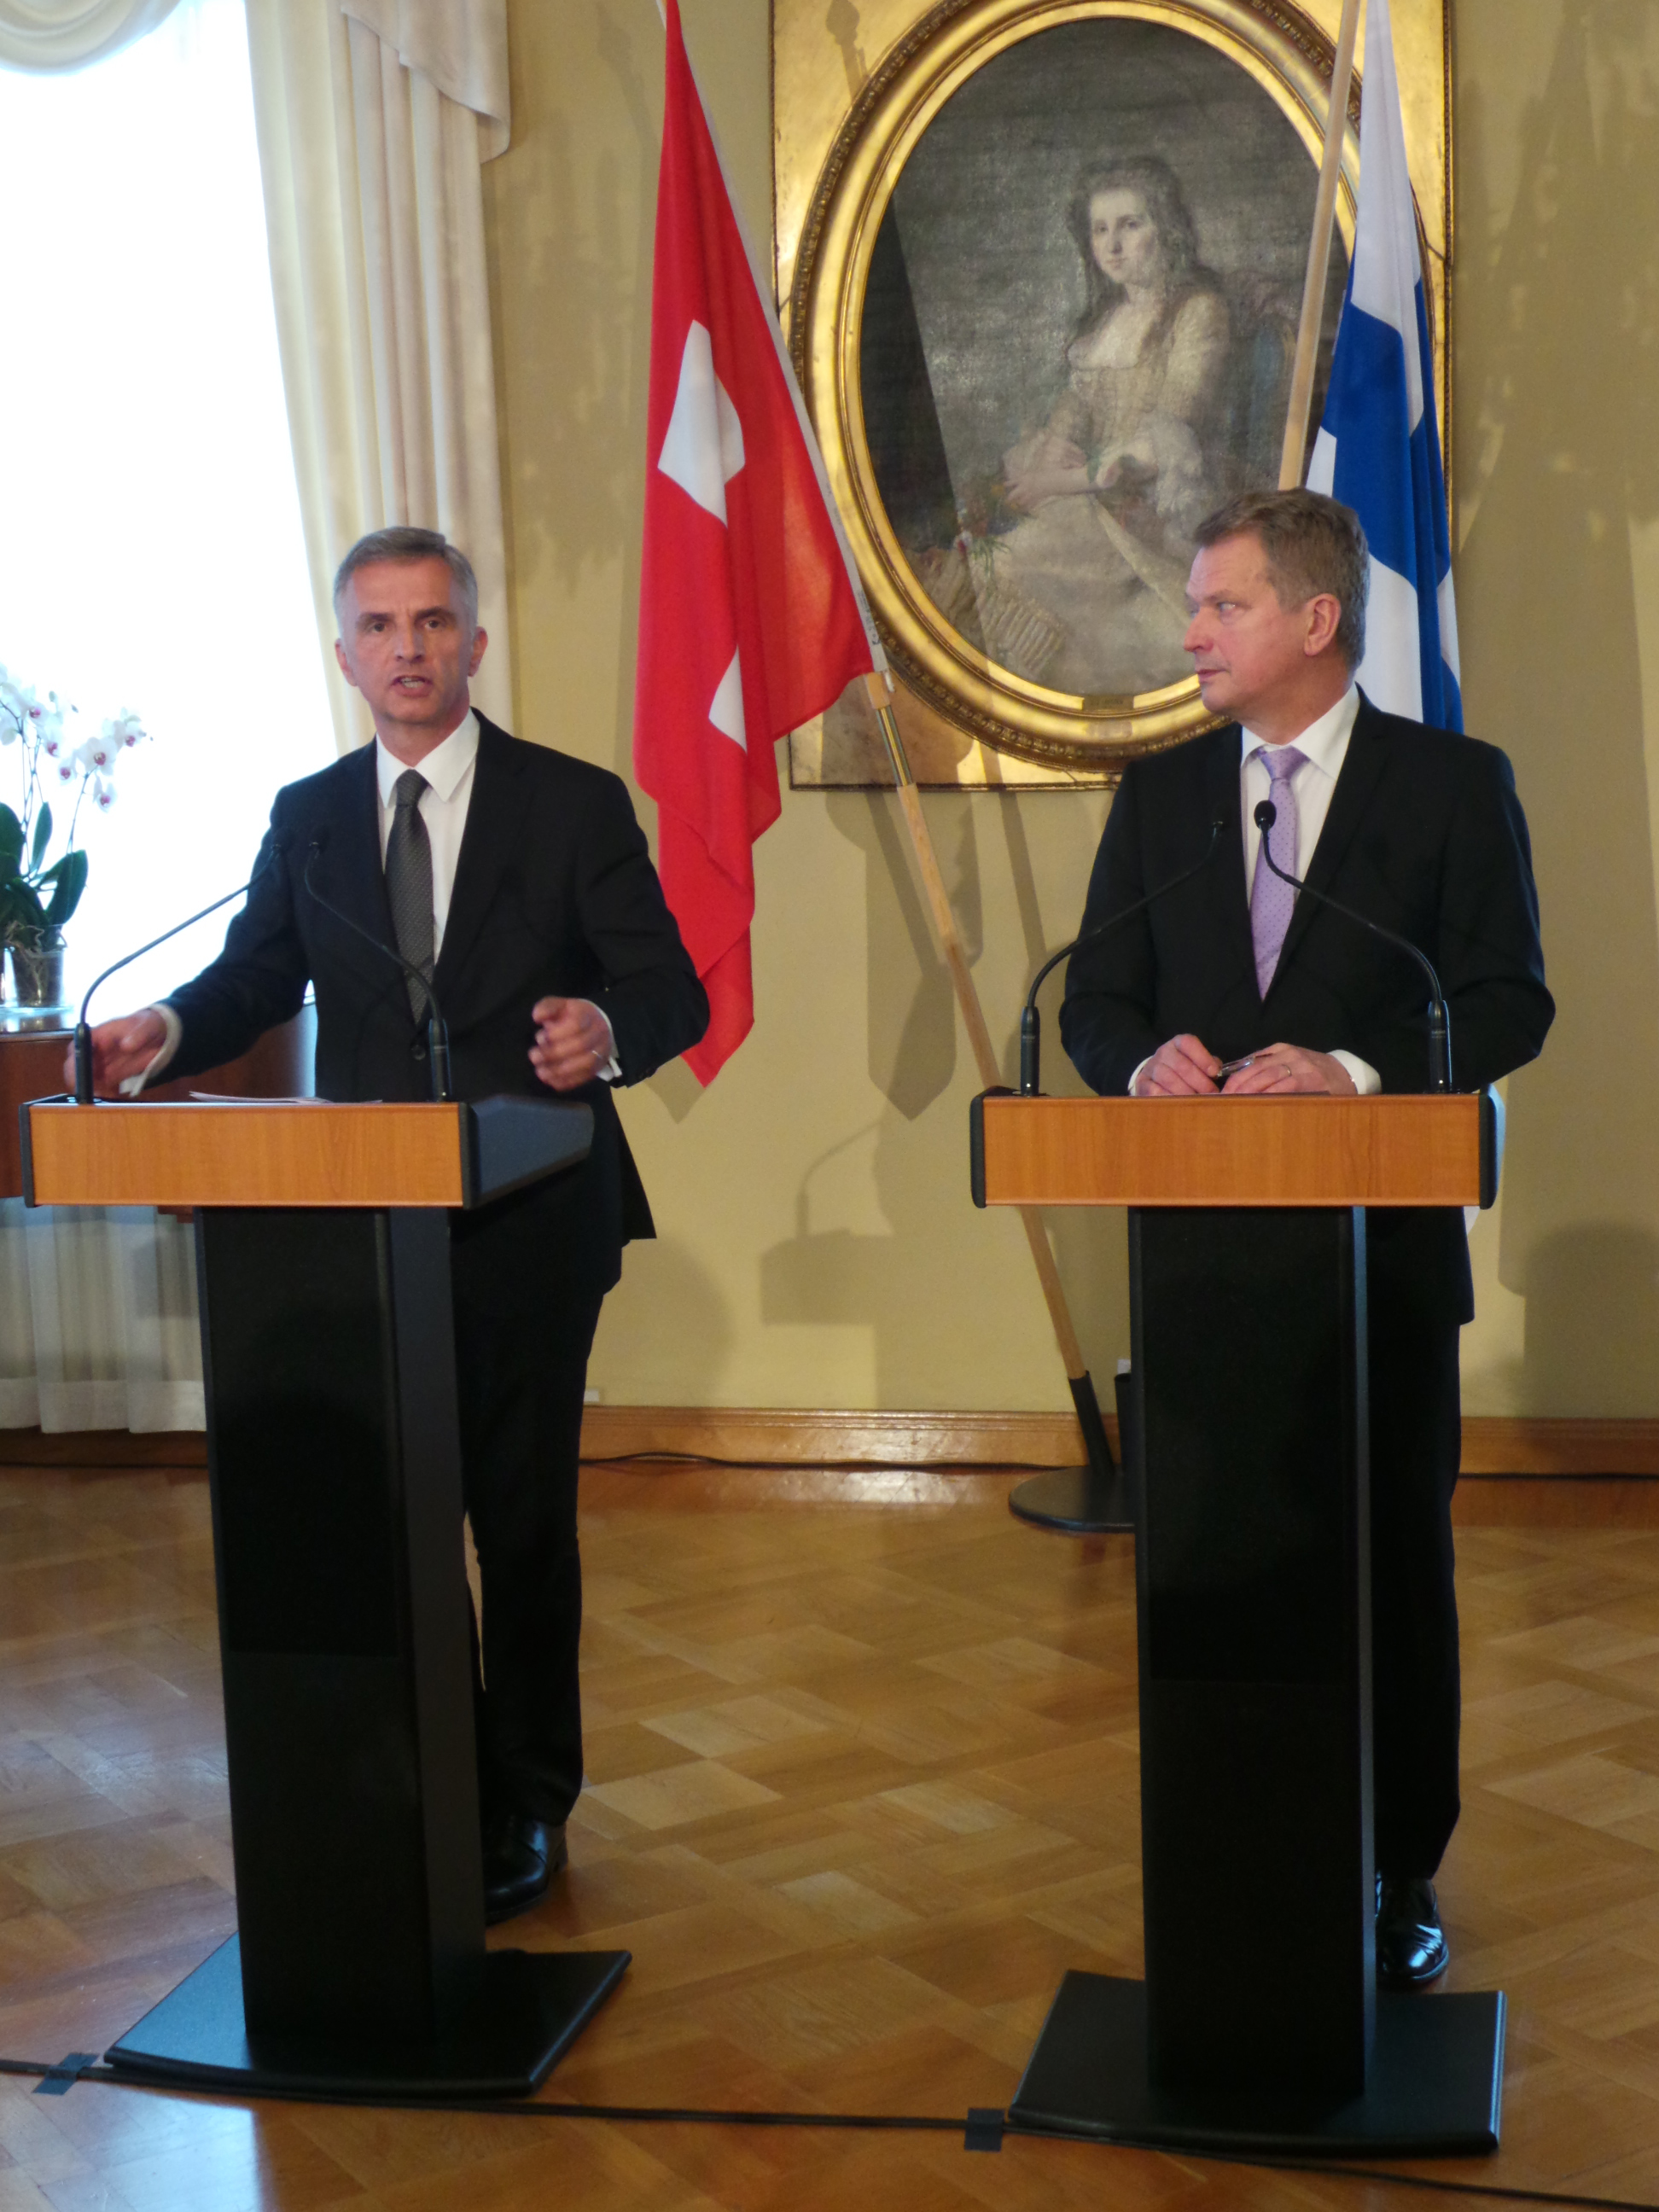 Didier Burkhalter en compagnie du président finlandais Sauli Niinistö lors d'une conférence de presse.